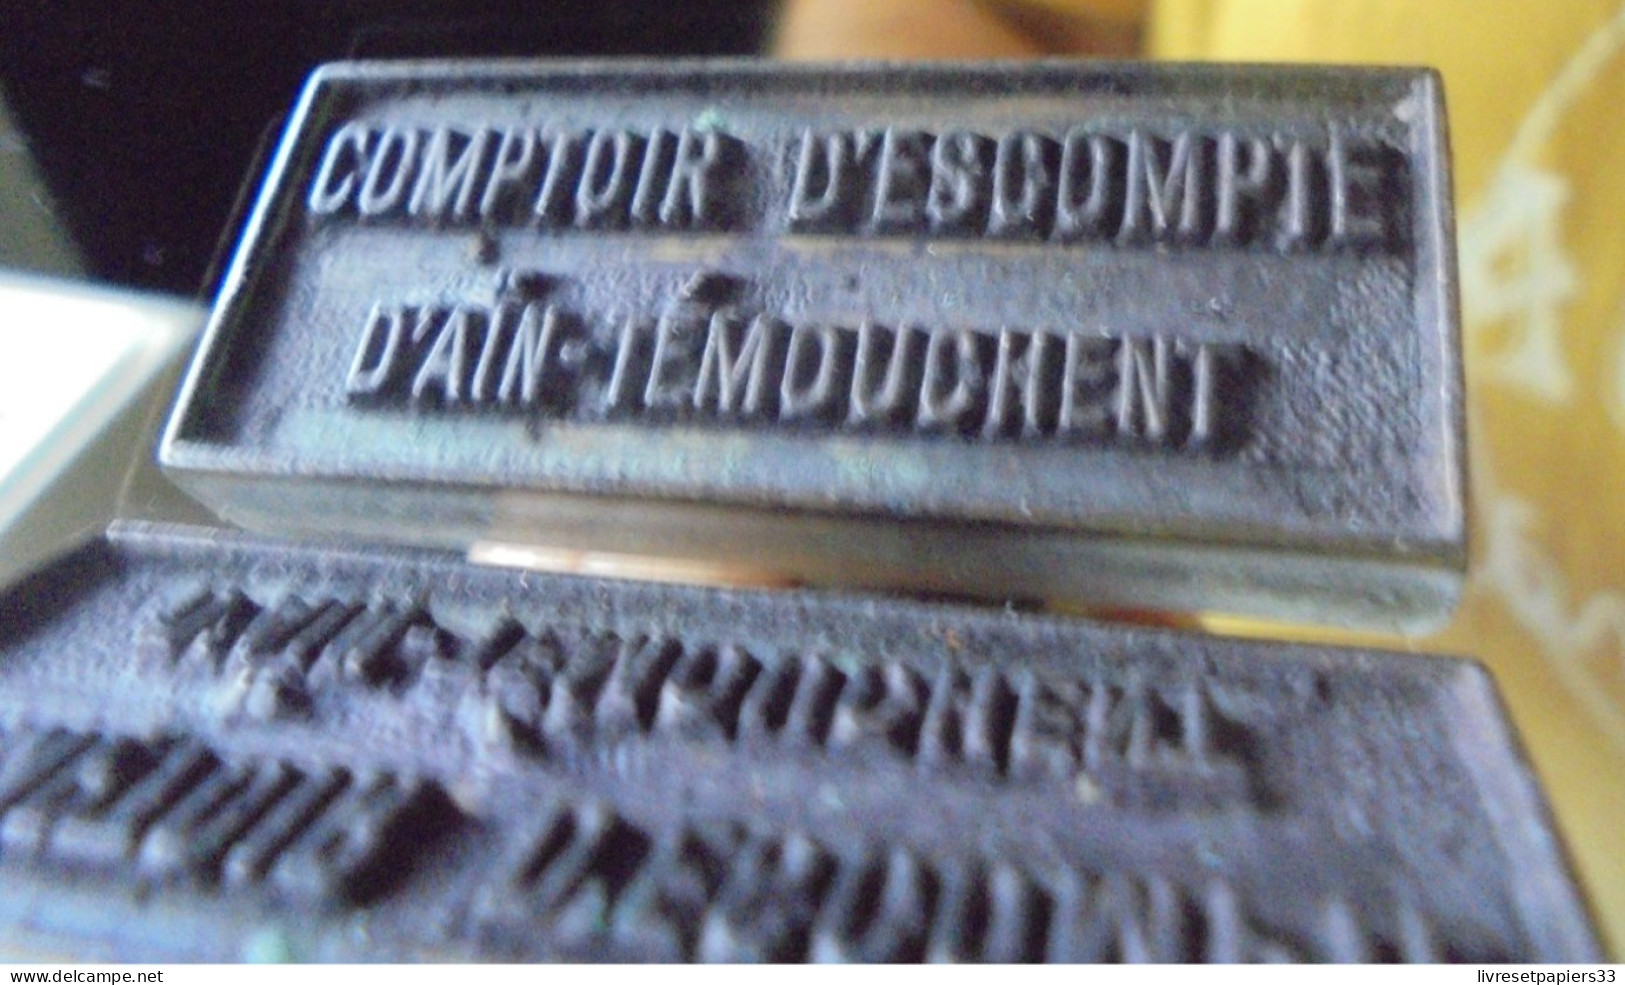 Ancien Tampon COMPTOIR D'ESCOMPTE D'AIN TEMOUCHENT Algérie Banque - Stempel & Siegel